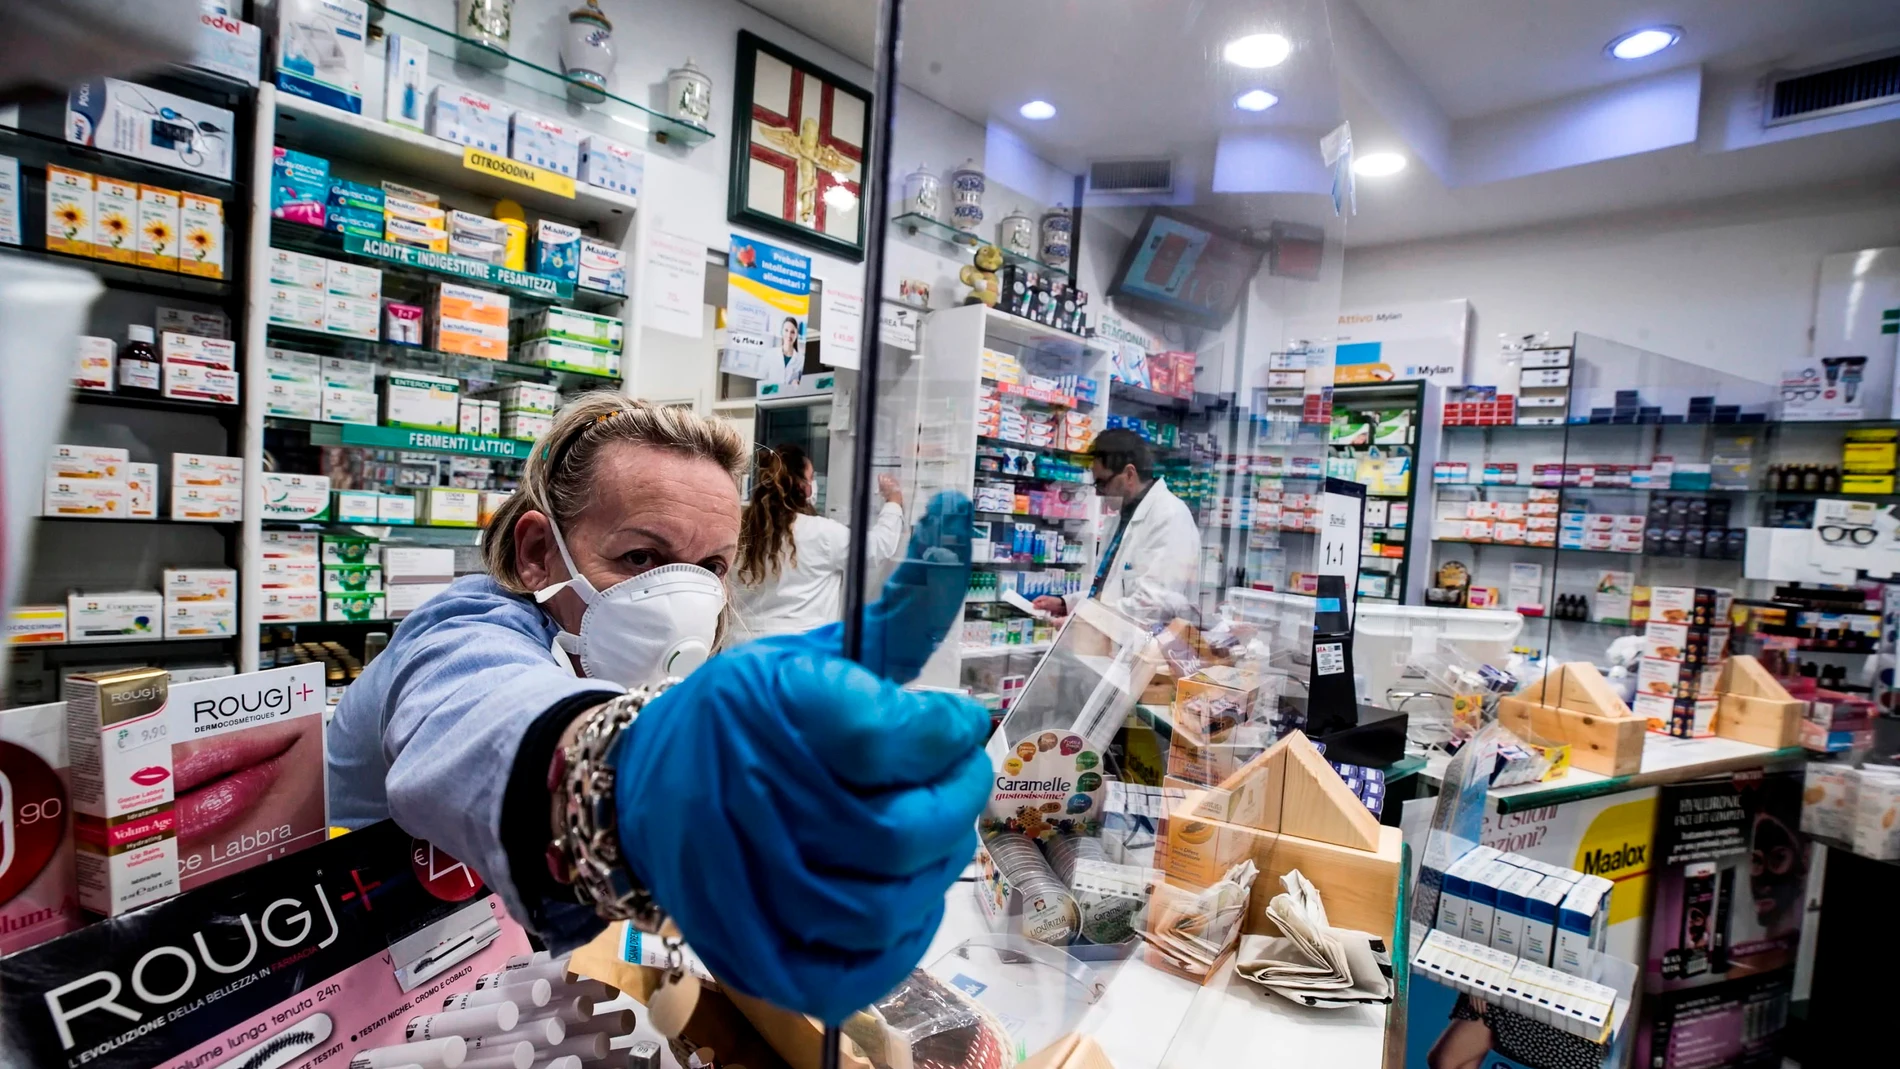 Una farmacia protege con plexiglás al personal durante el cierre de emergencia debido al brote de coronavirus.